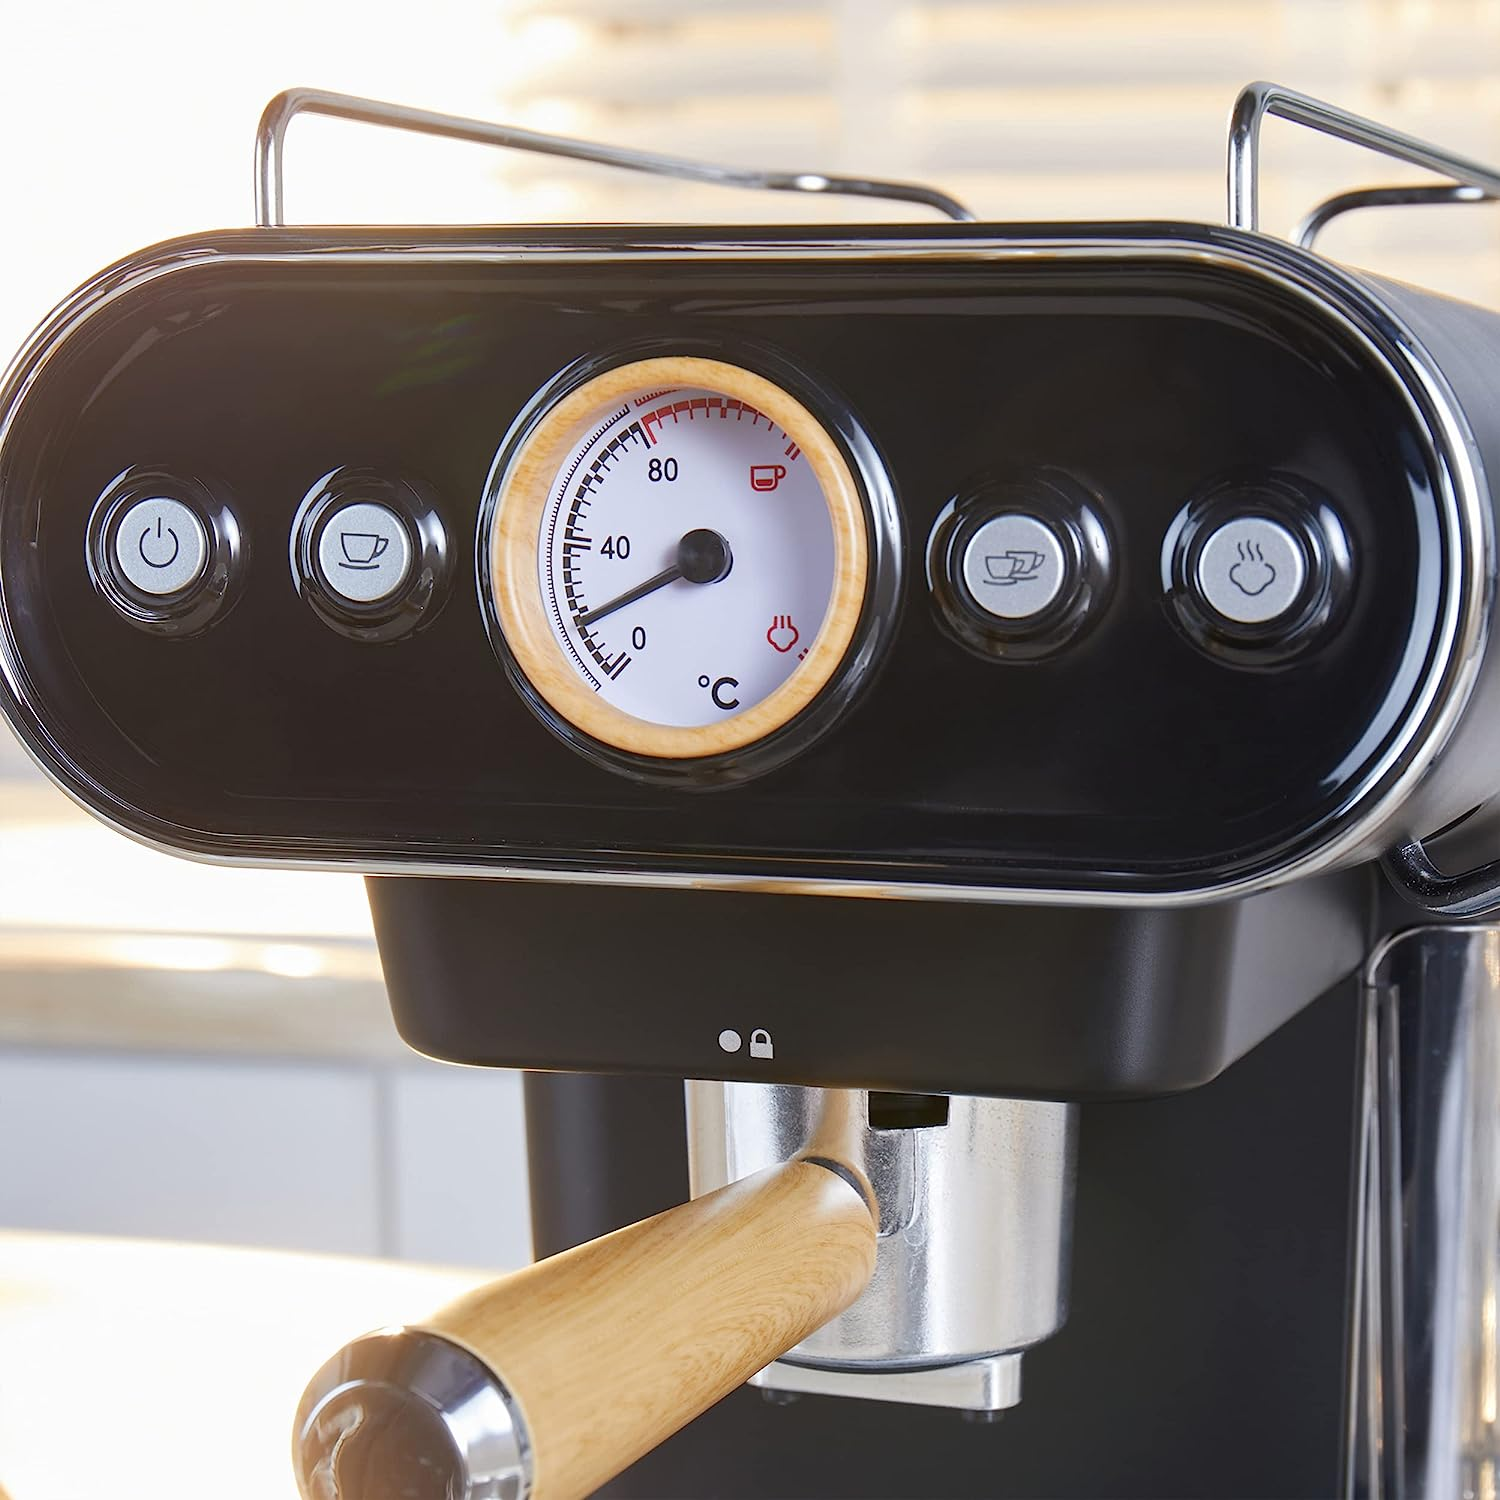 bar 19 Druckpumpe Espressomaschine PETRA 3in1 Kaffeemaschine Kapselmaschine Schwarz